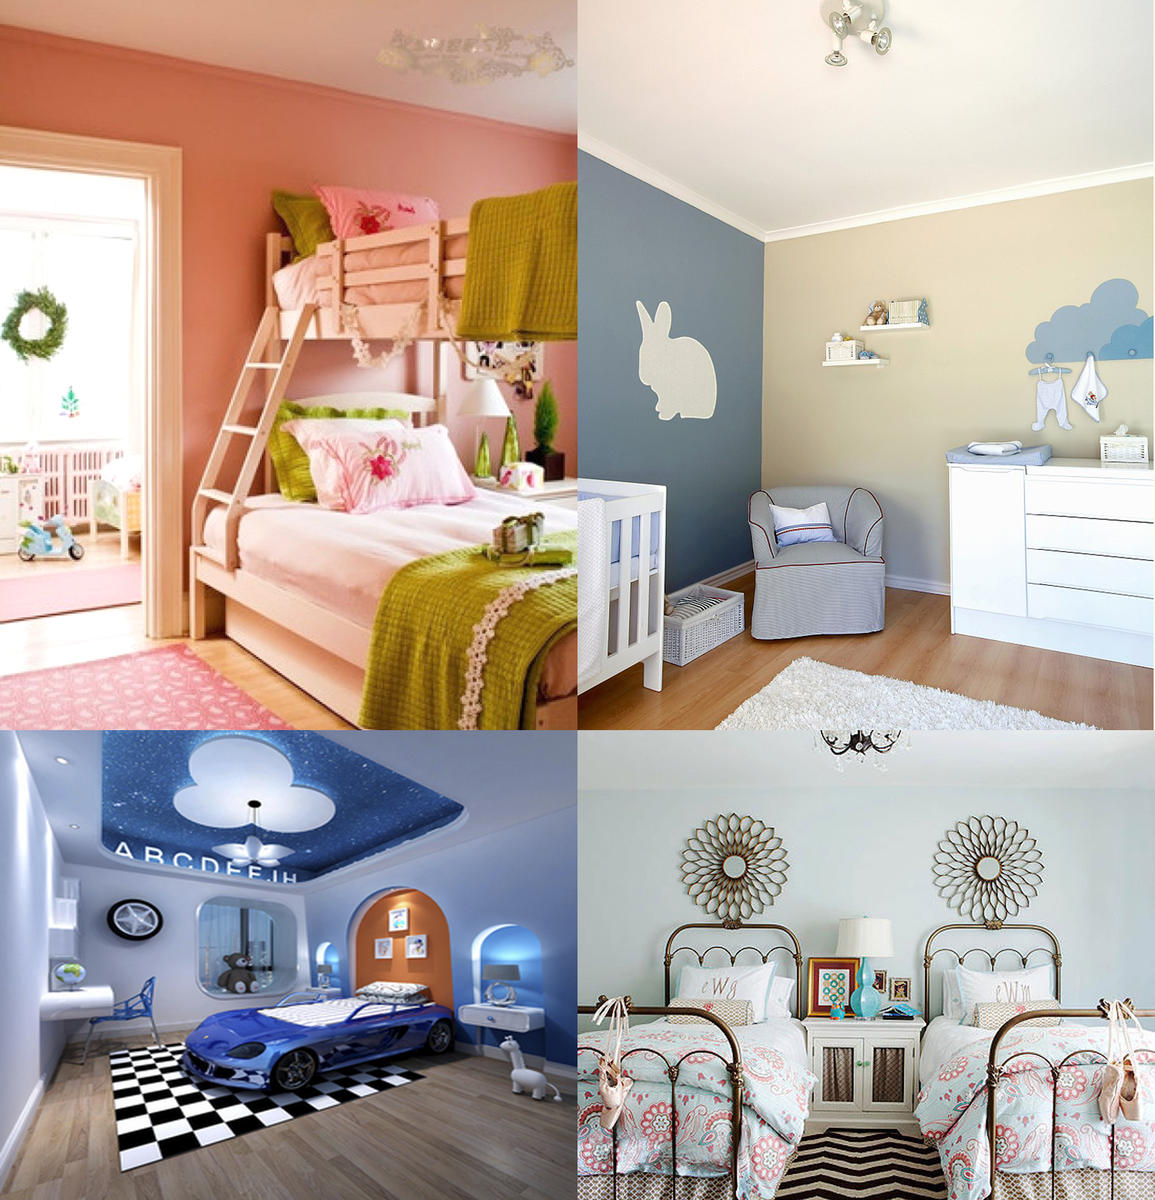 现在的儿童房装修真是各种方案层出不穷,粉红的公主房,古灵精怪的小